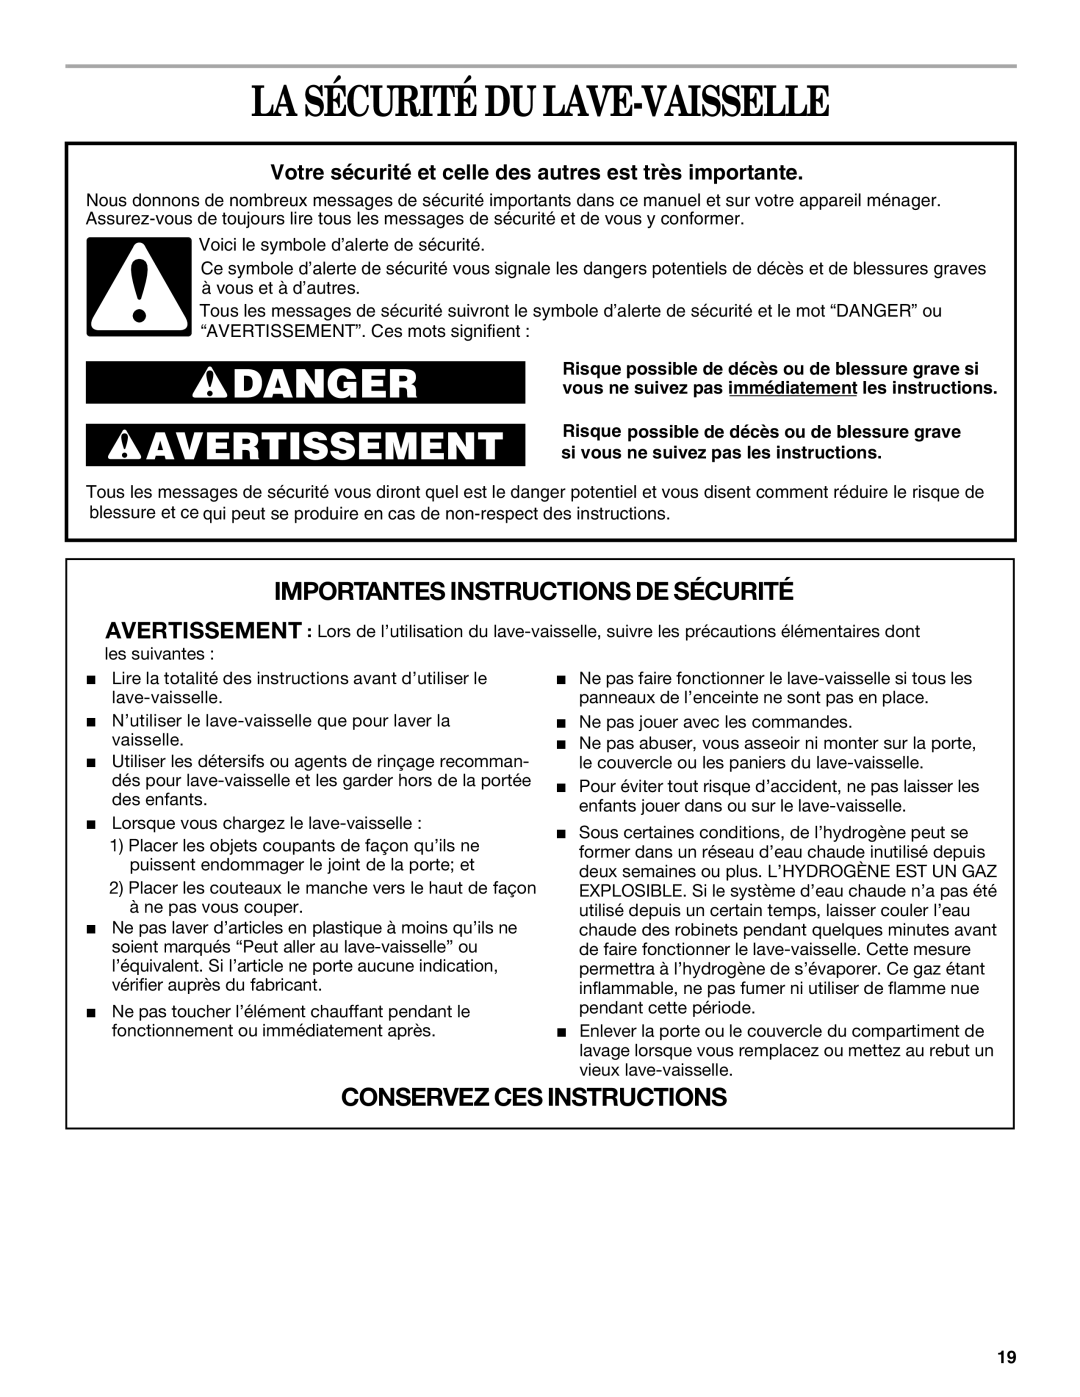 Whirlpool Series 810 manual La Sécurité Du Lave-Vaisselle, Danger, Avertissement, Importantes Instructions De Sécurité 